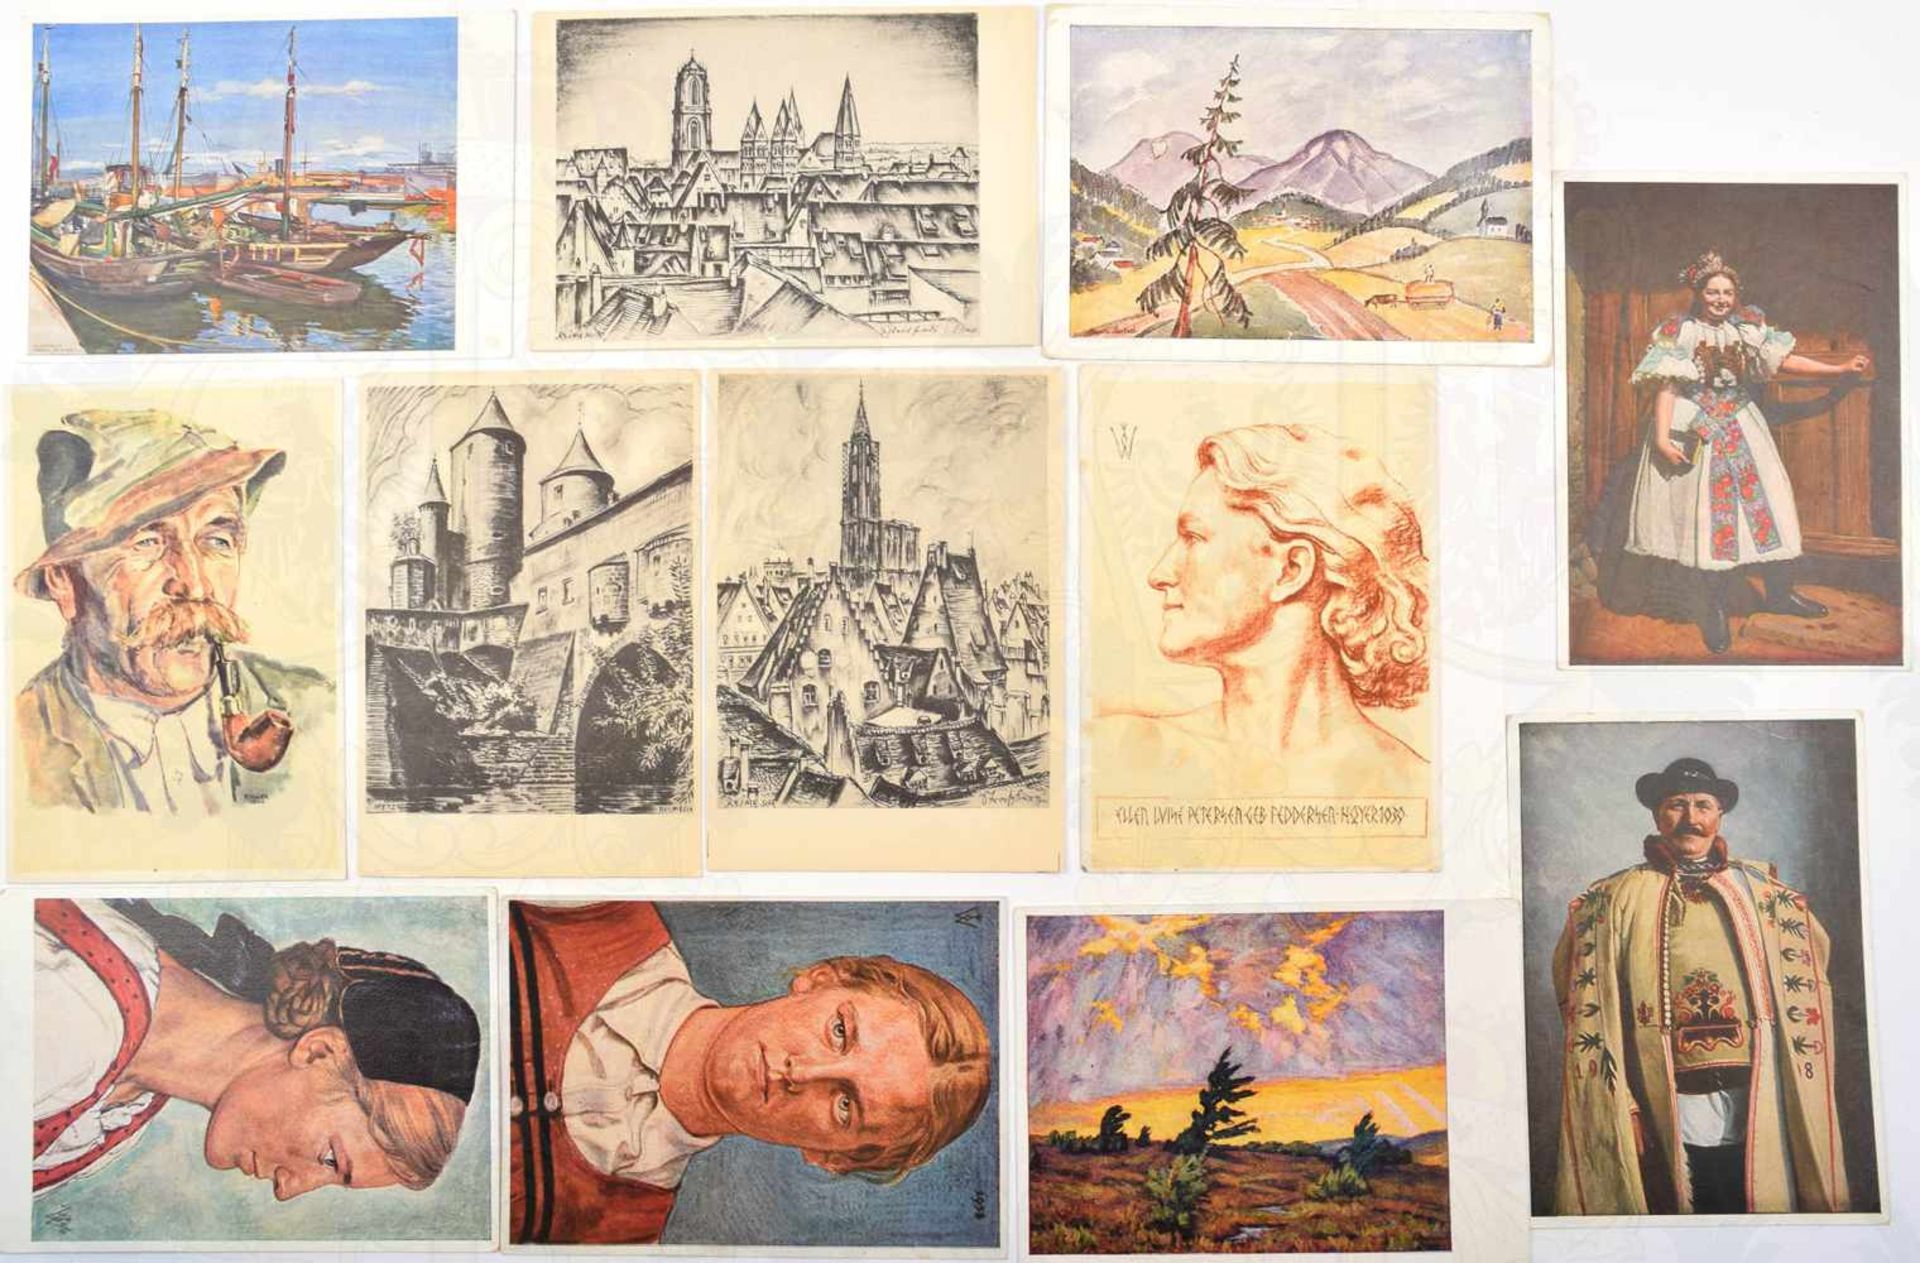 27 VDA-ANSICHTSKARTEN, 1939-1941, Kunstdrucke nach Zeichnungen u. Aquarellen, davon 12 farbig,